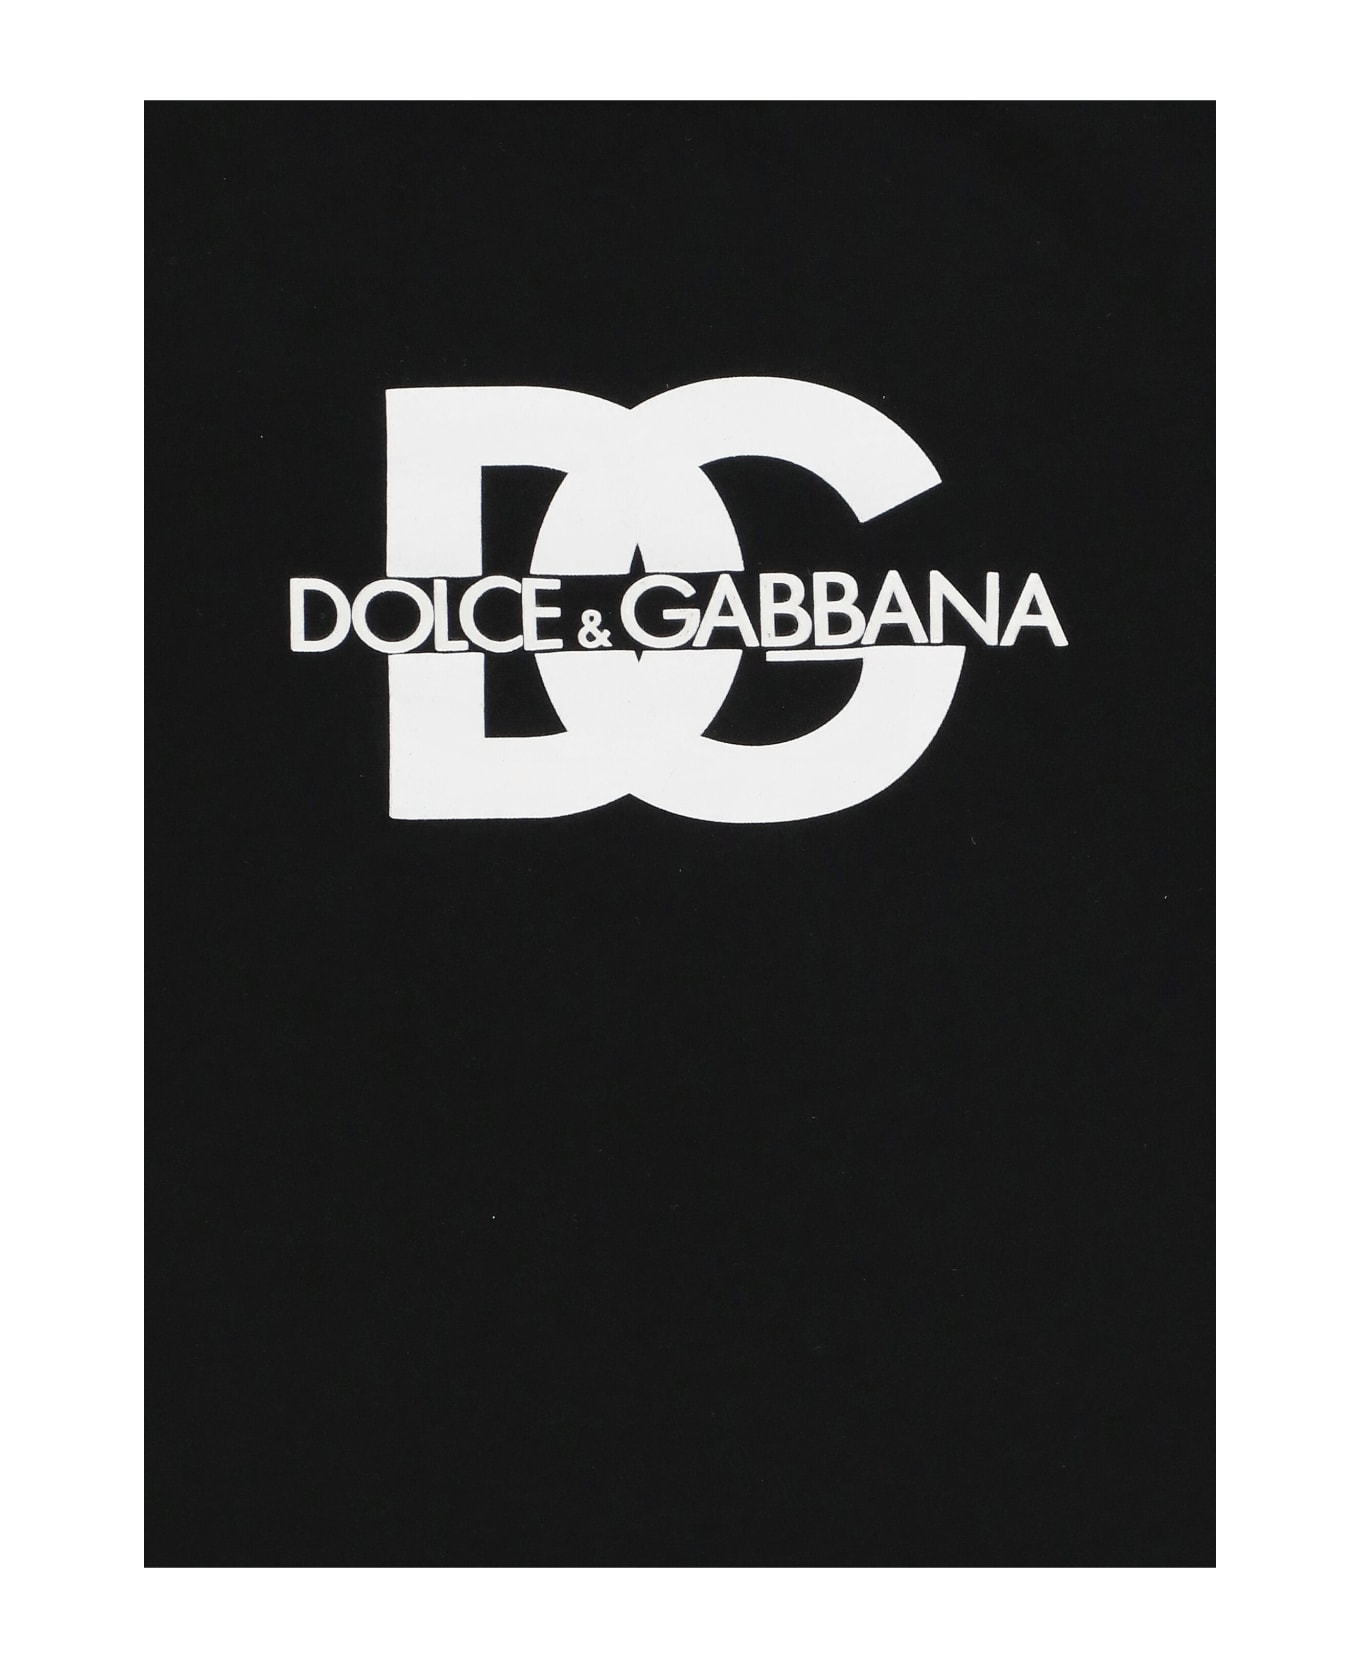 Dolce & Gabbana T-shirt With Logo - BLACK